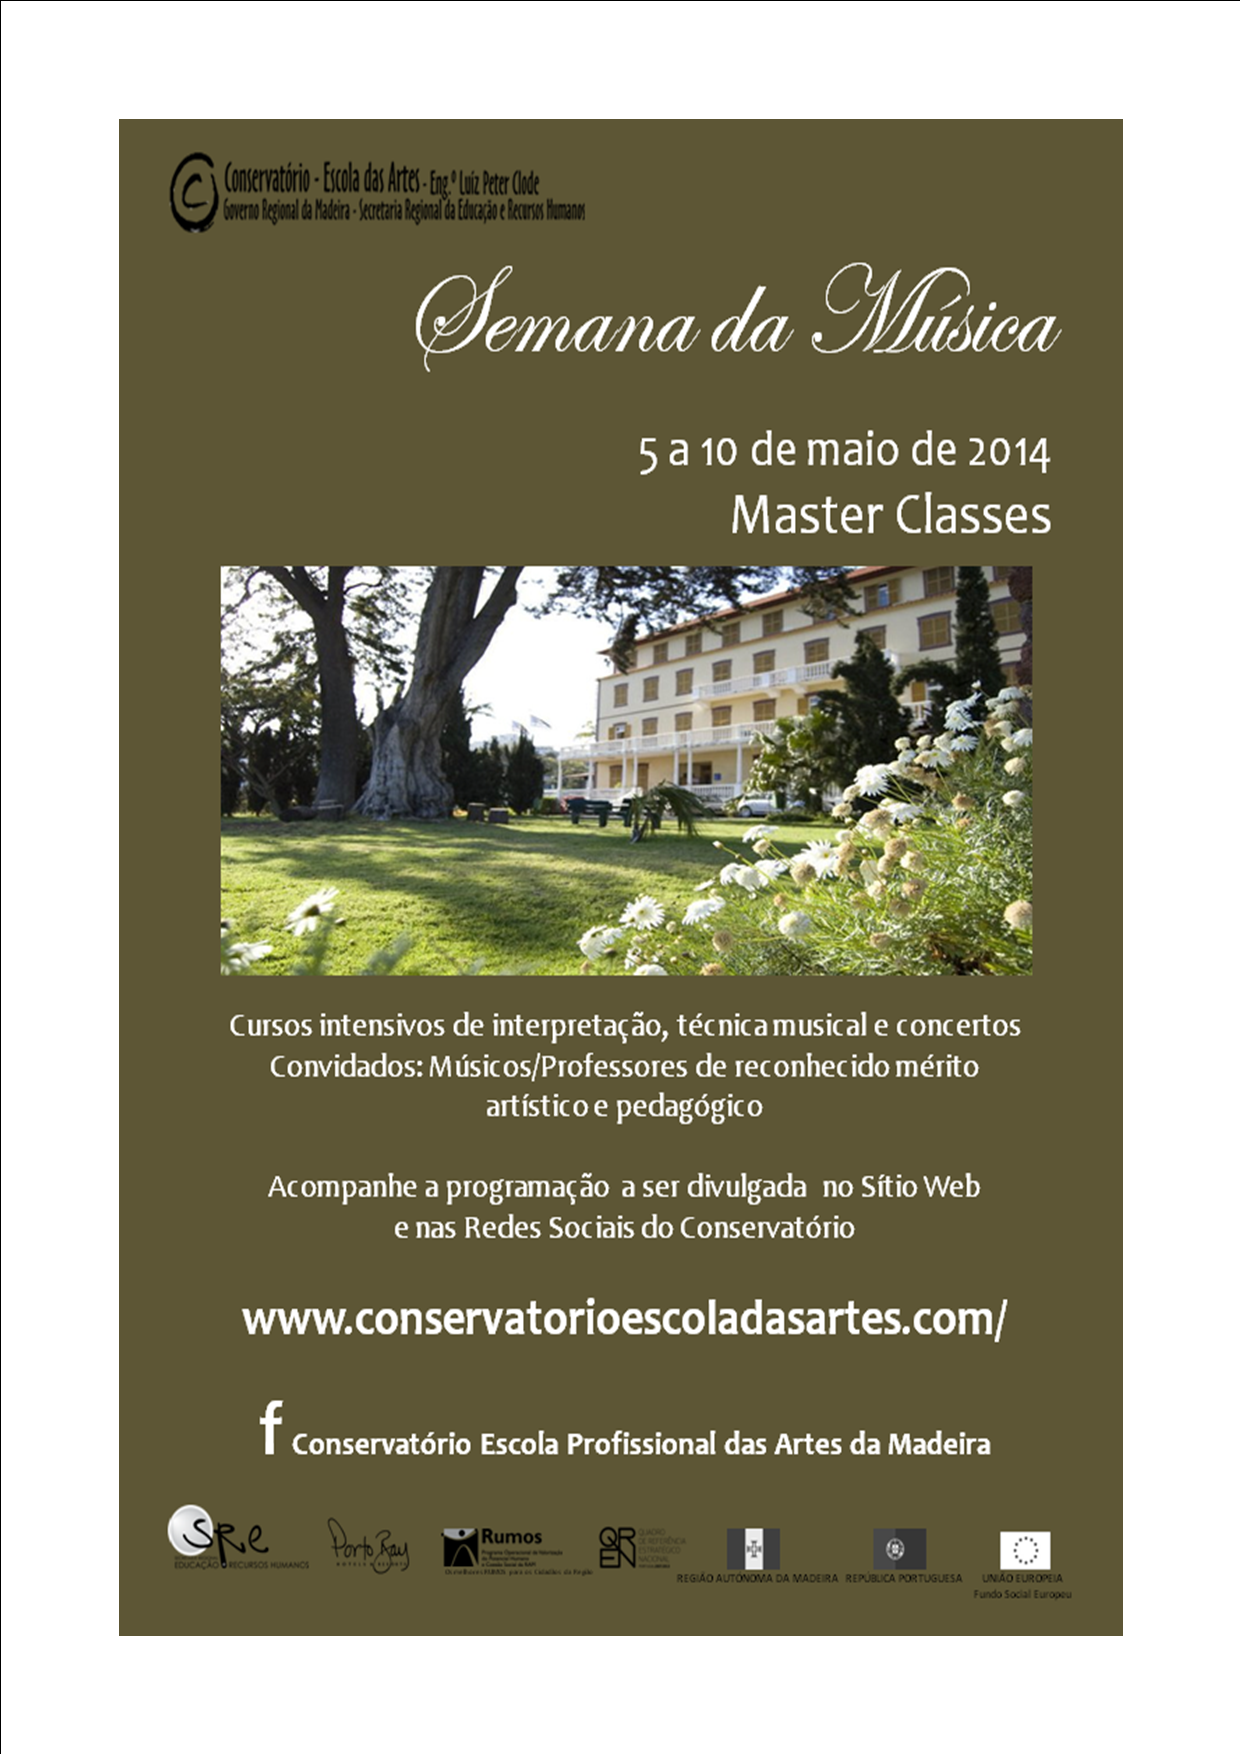 Conservatório das Artes promove a “Semana da Música - Master Classes”